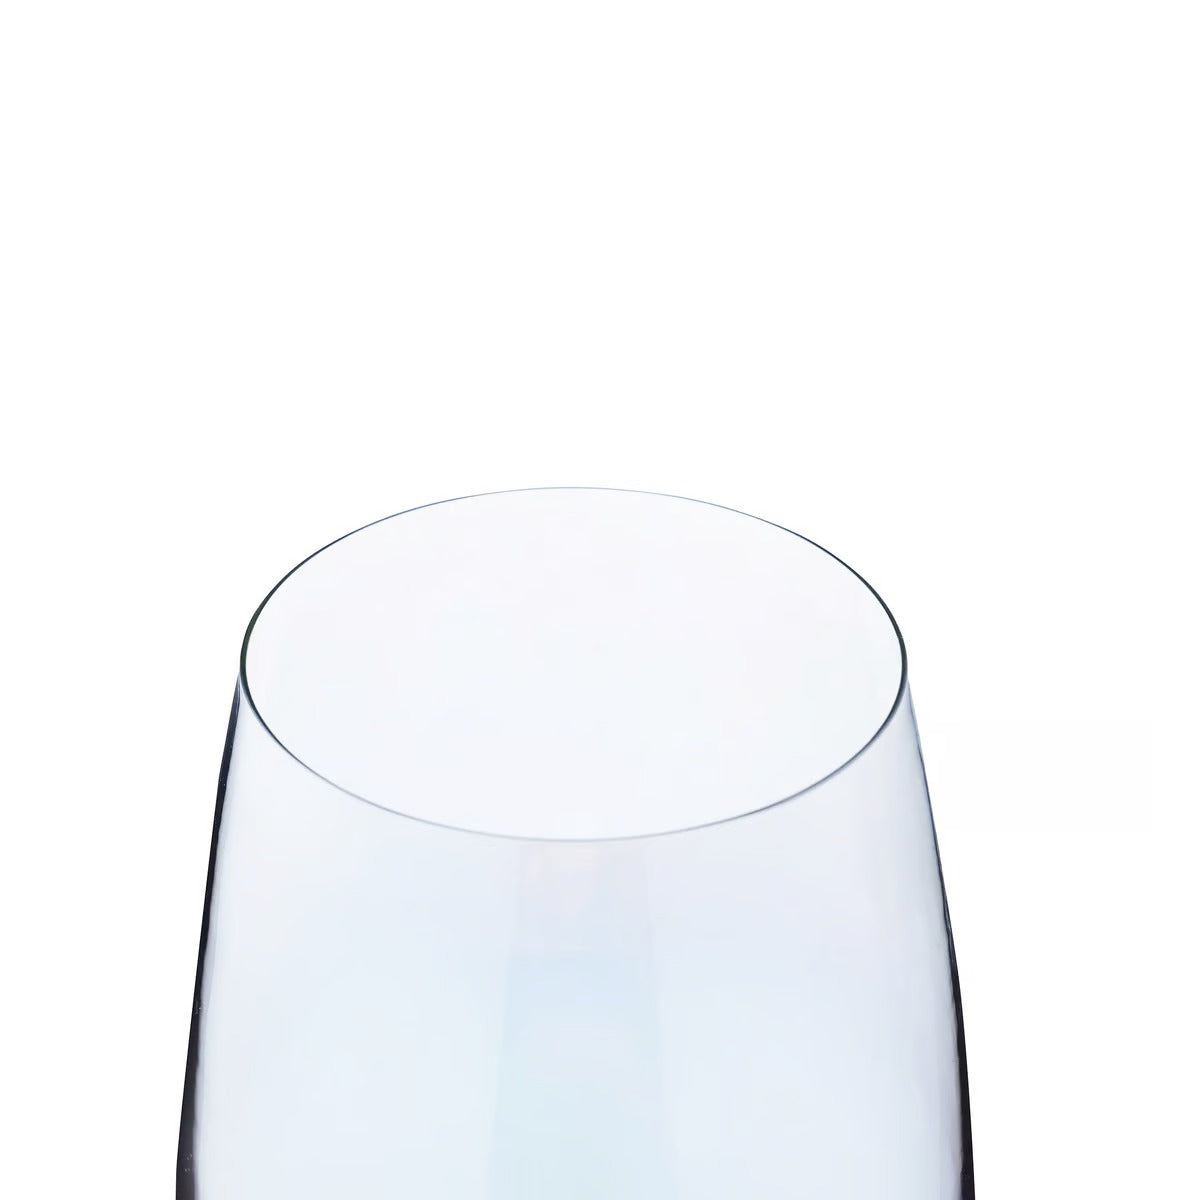 Aine Electroplated 4-piece Stemware Glass Set 595ml - Grey